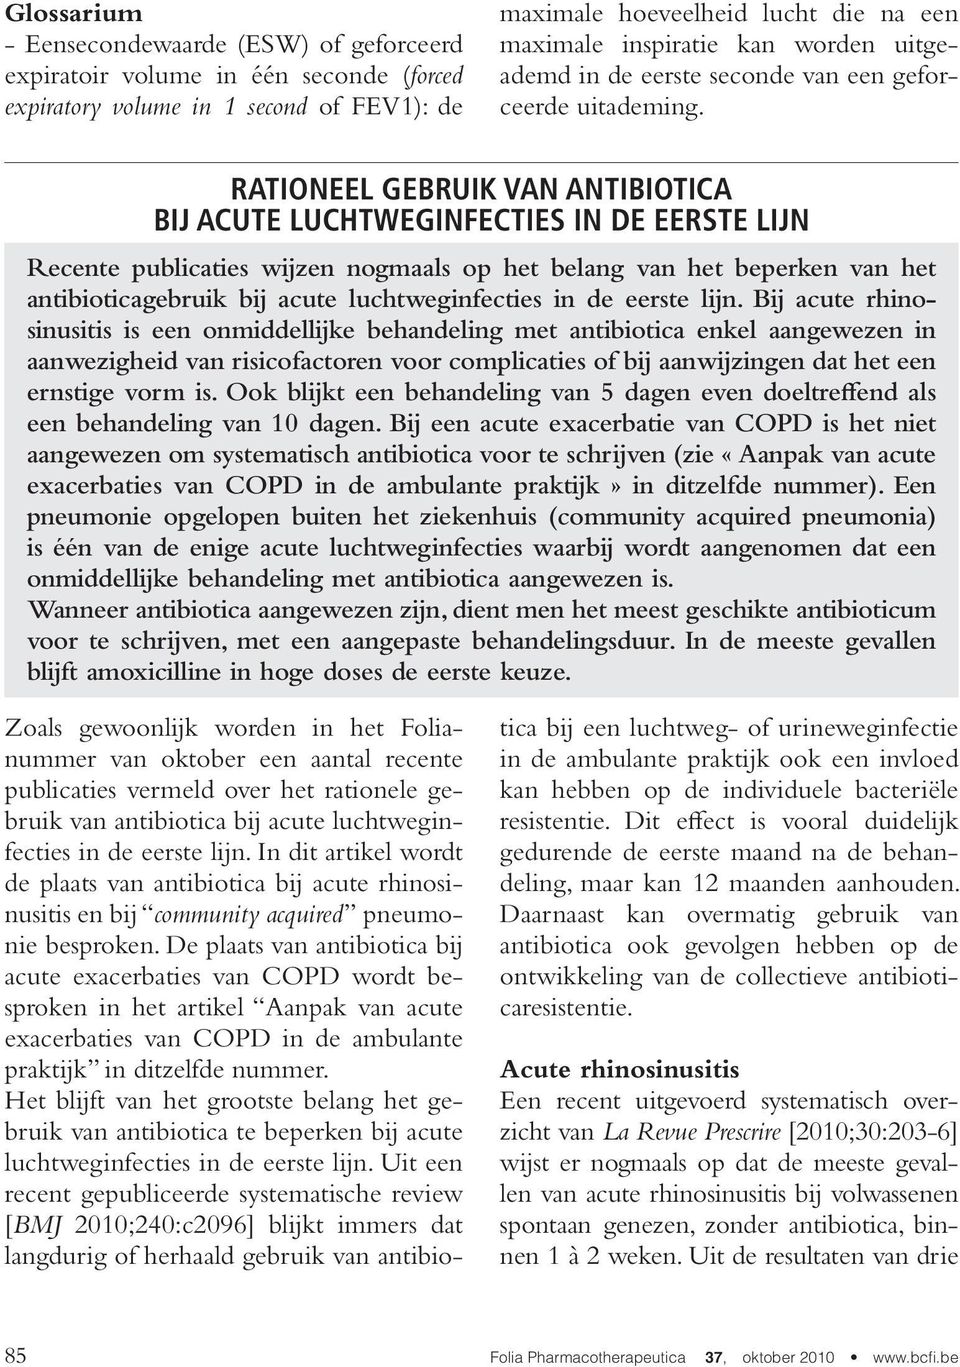 Rationeel gebruik van antibiotica bij acute luchtweginfecties in de eerste lijn Recente publicaties wijzen nogmaals op het belang van het beperken van het antibioticagebruik bij acute